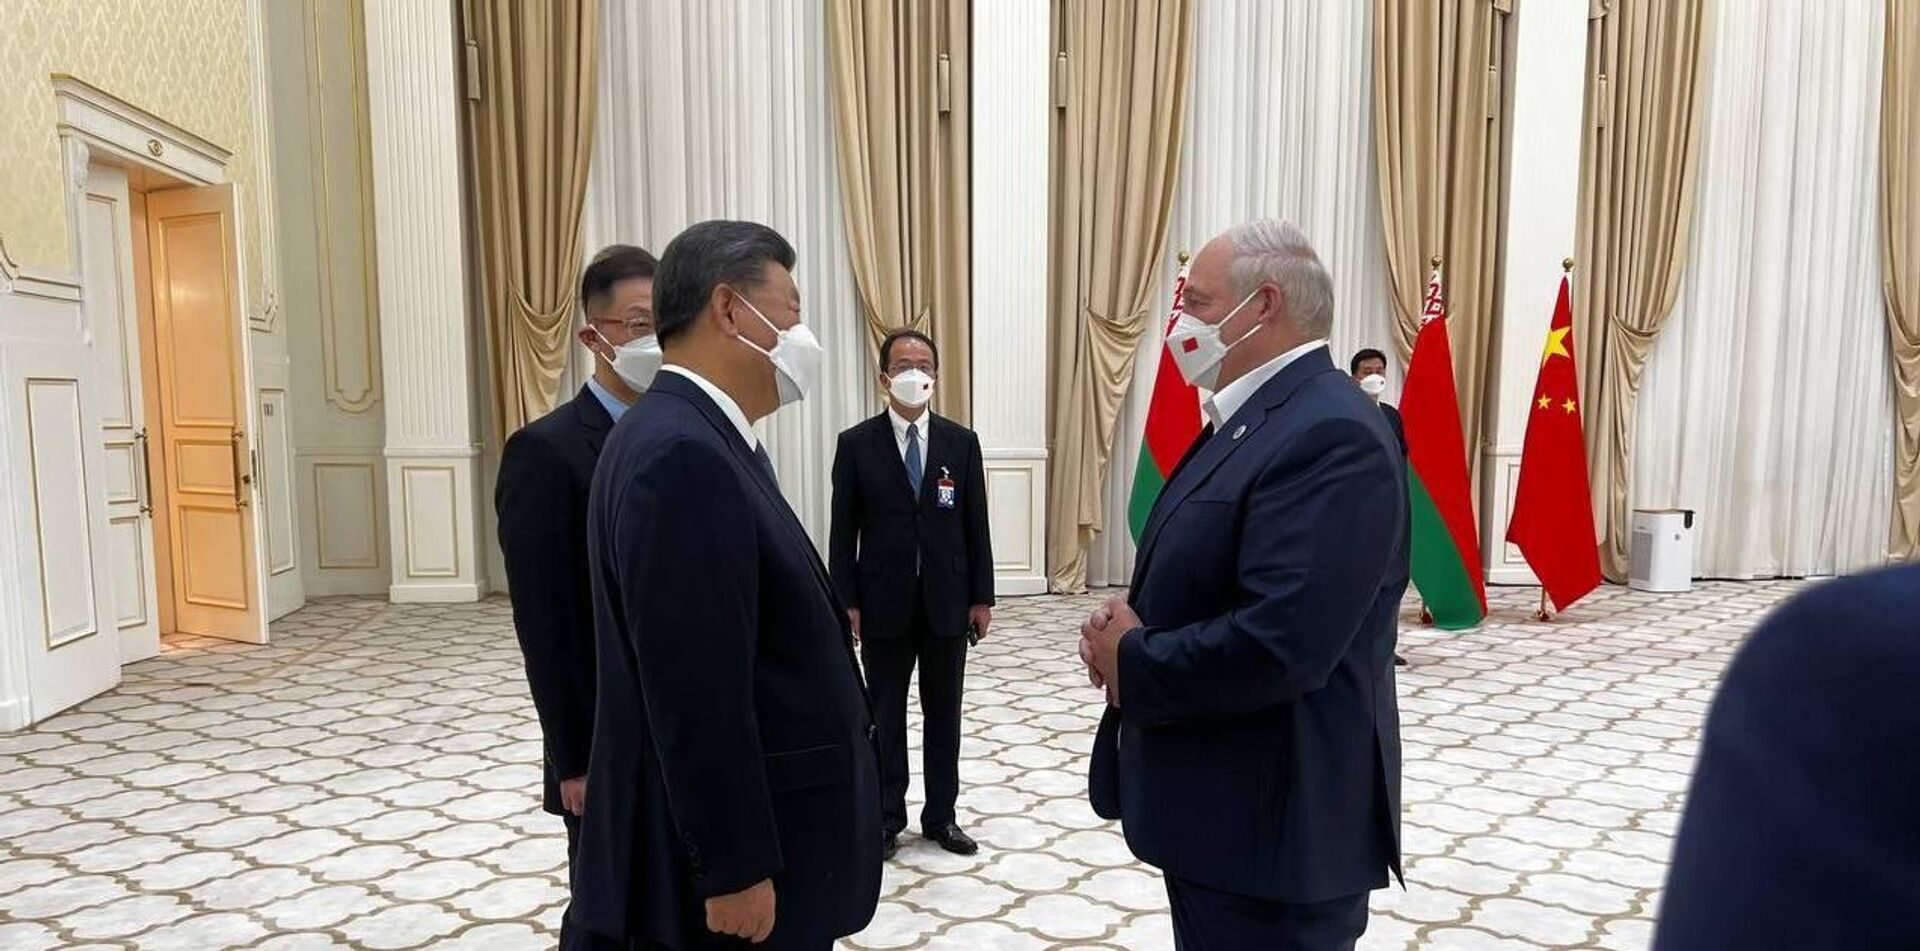 Встреча Александра Лукашенко и Си Цзиньпина на саммите ШОС в Самарканде  - Sputnik Беларусь, 1920, 15.09.2022